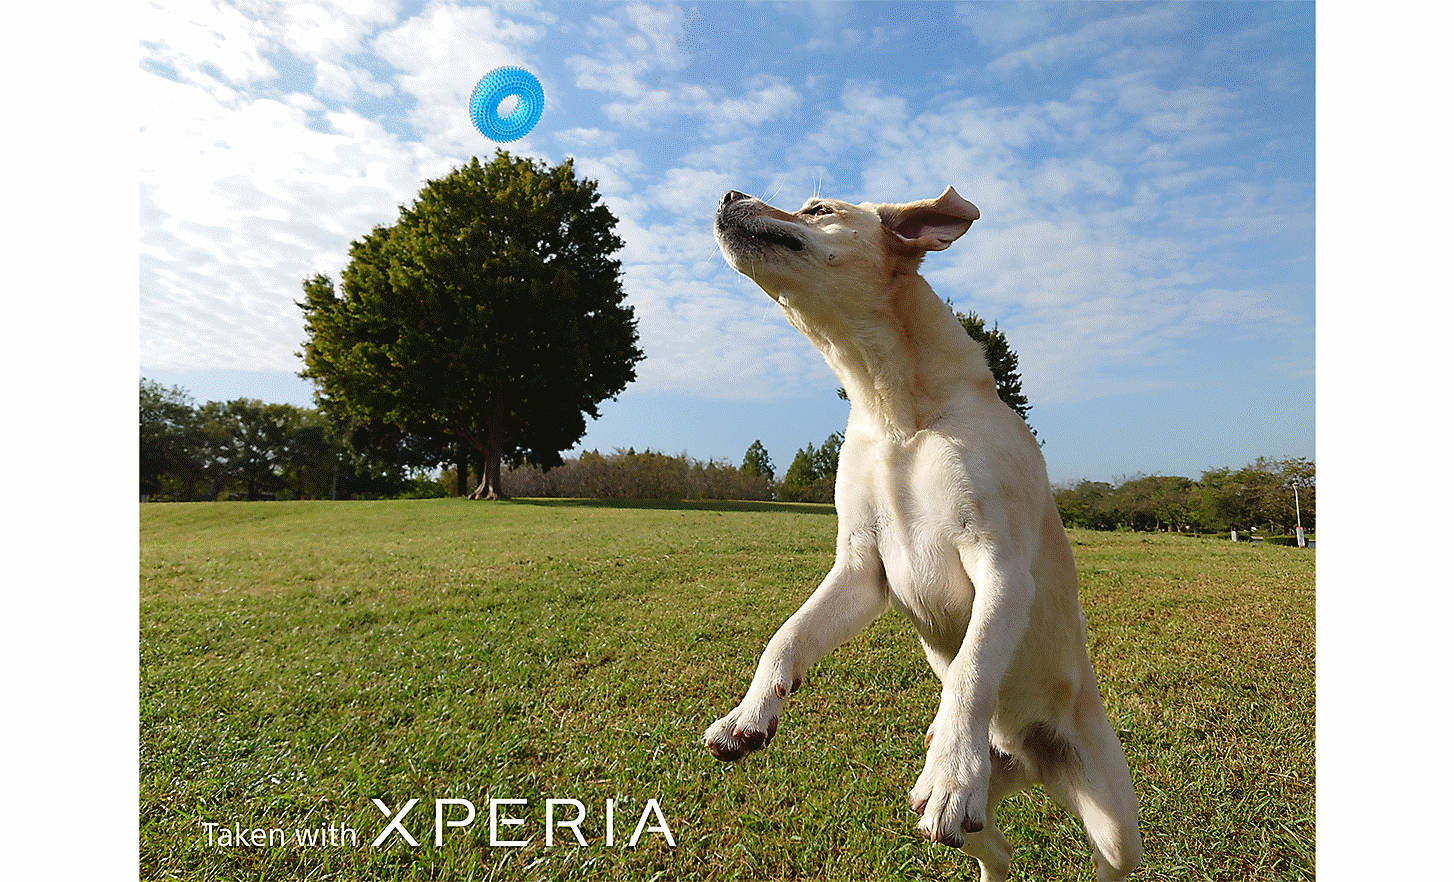 Ảnh chụp một chú chó đang nhảy lên để bắt một món đồ chơi màu xanh lam trên cánh đồng. Trên ảnh có dòng chữ "Taken with XPERIA” (Chụp bằng XPERIA).